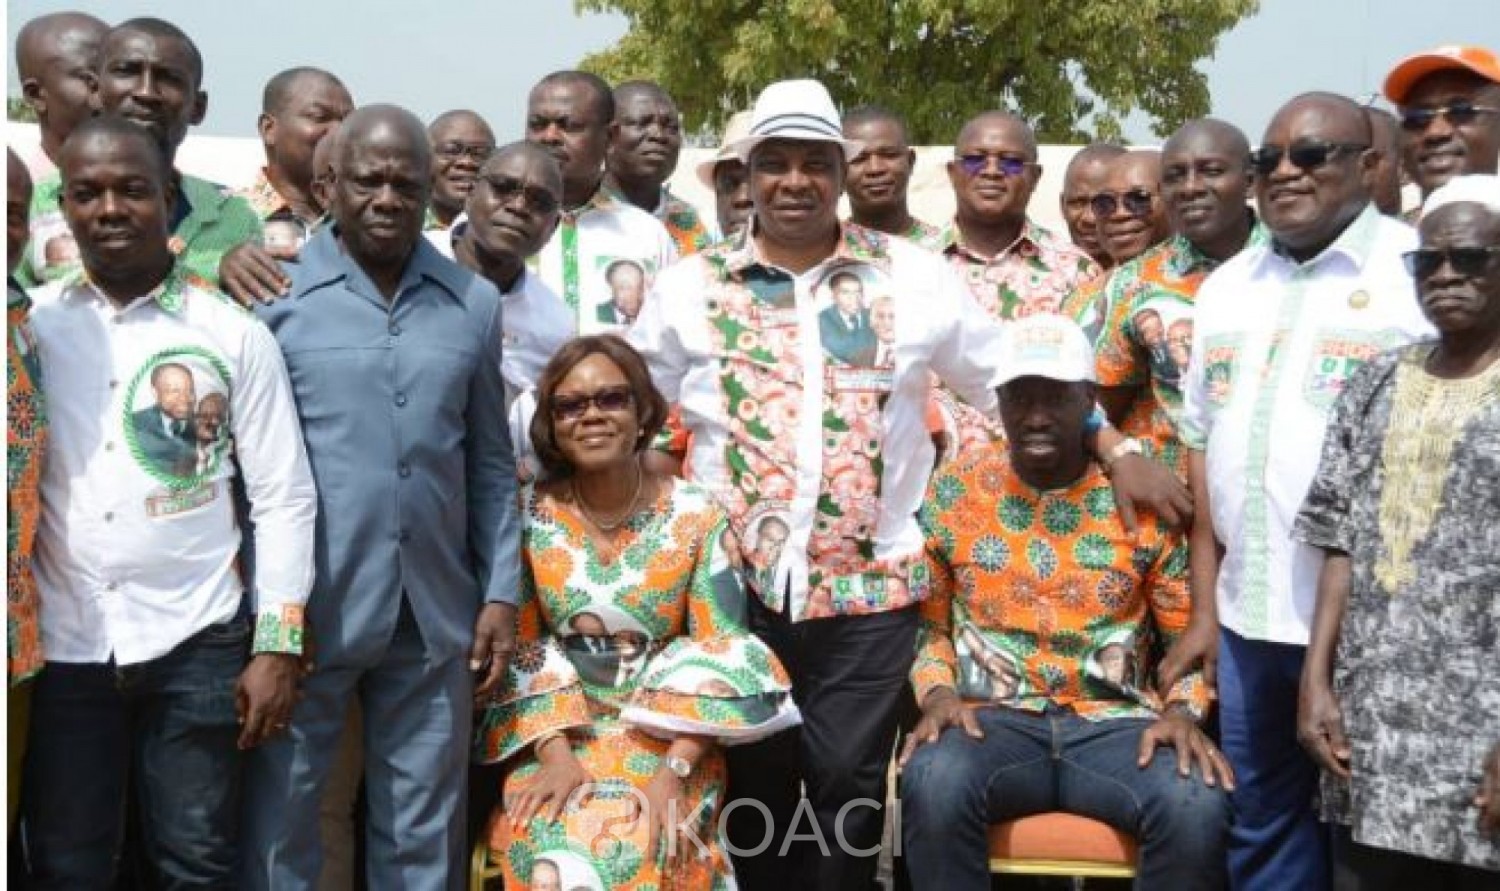 Côte d'Ivoire: Investiture de la coordination régionale RHDP du Bounkani, Nialé et Adjoumani promettent une victoire éclatante au 1er tour dans la région en 2020